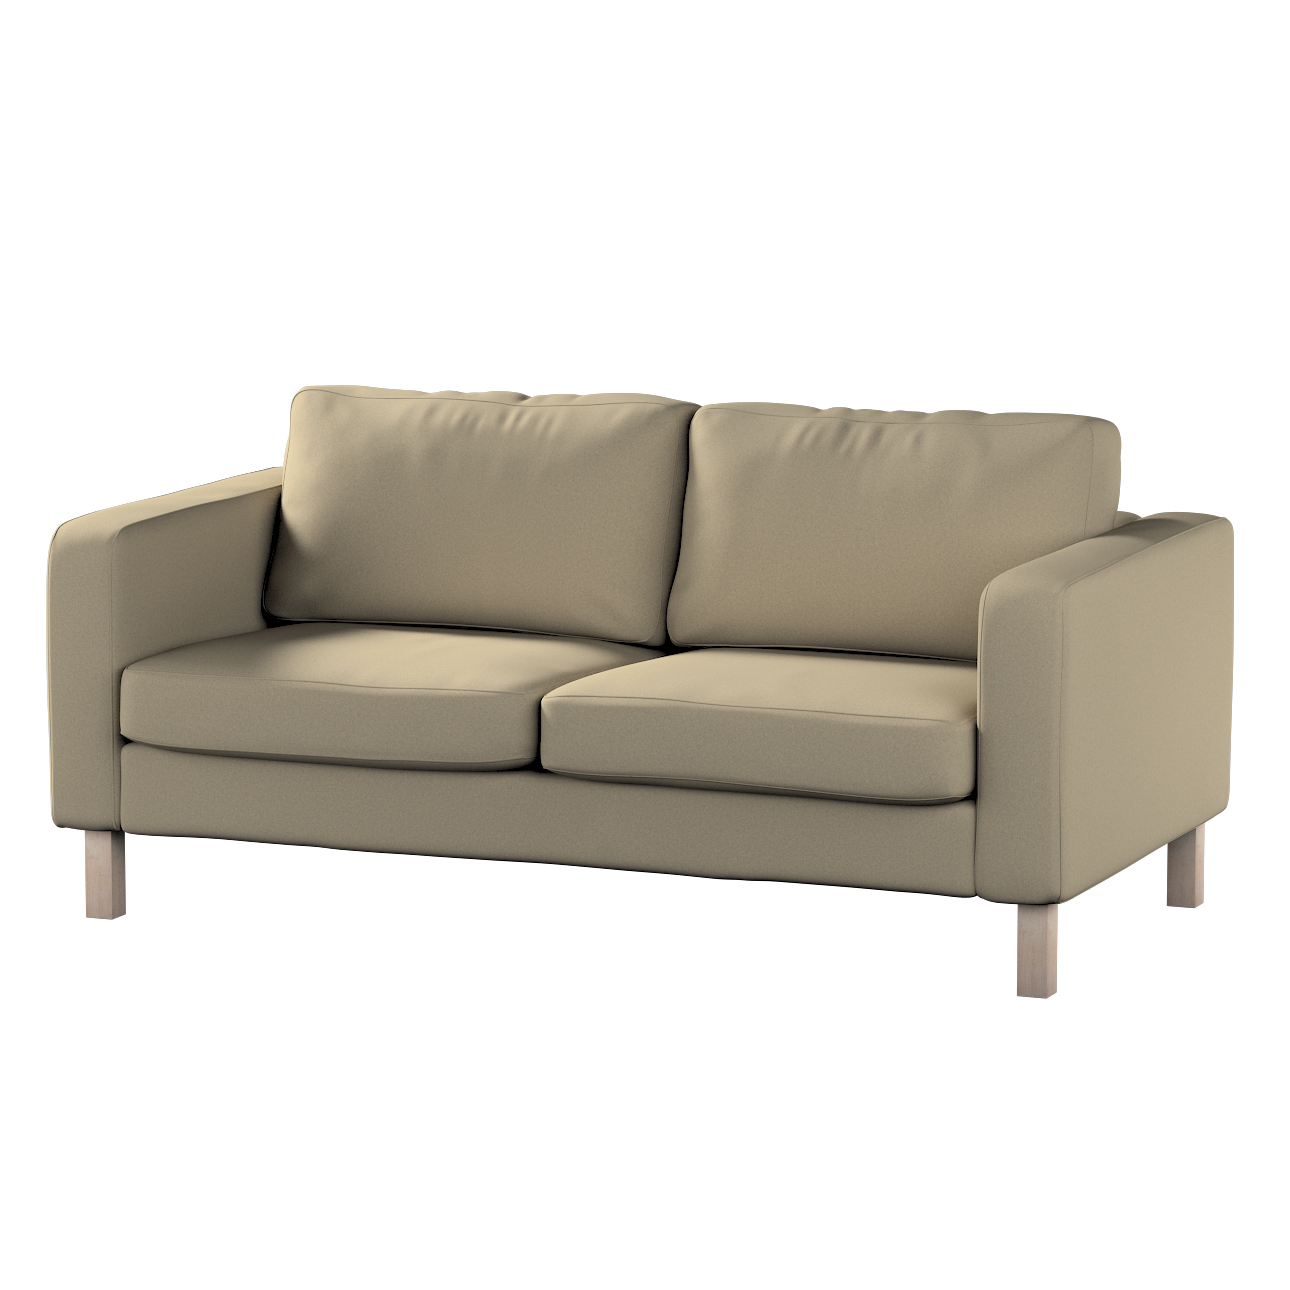 Bezug für Karlstad 2-Sitzer Sofa nicht ausklappbar, dunkelbeige, Sofahusse, günstig online kaufen